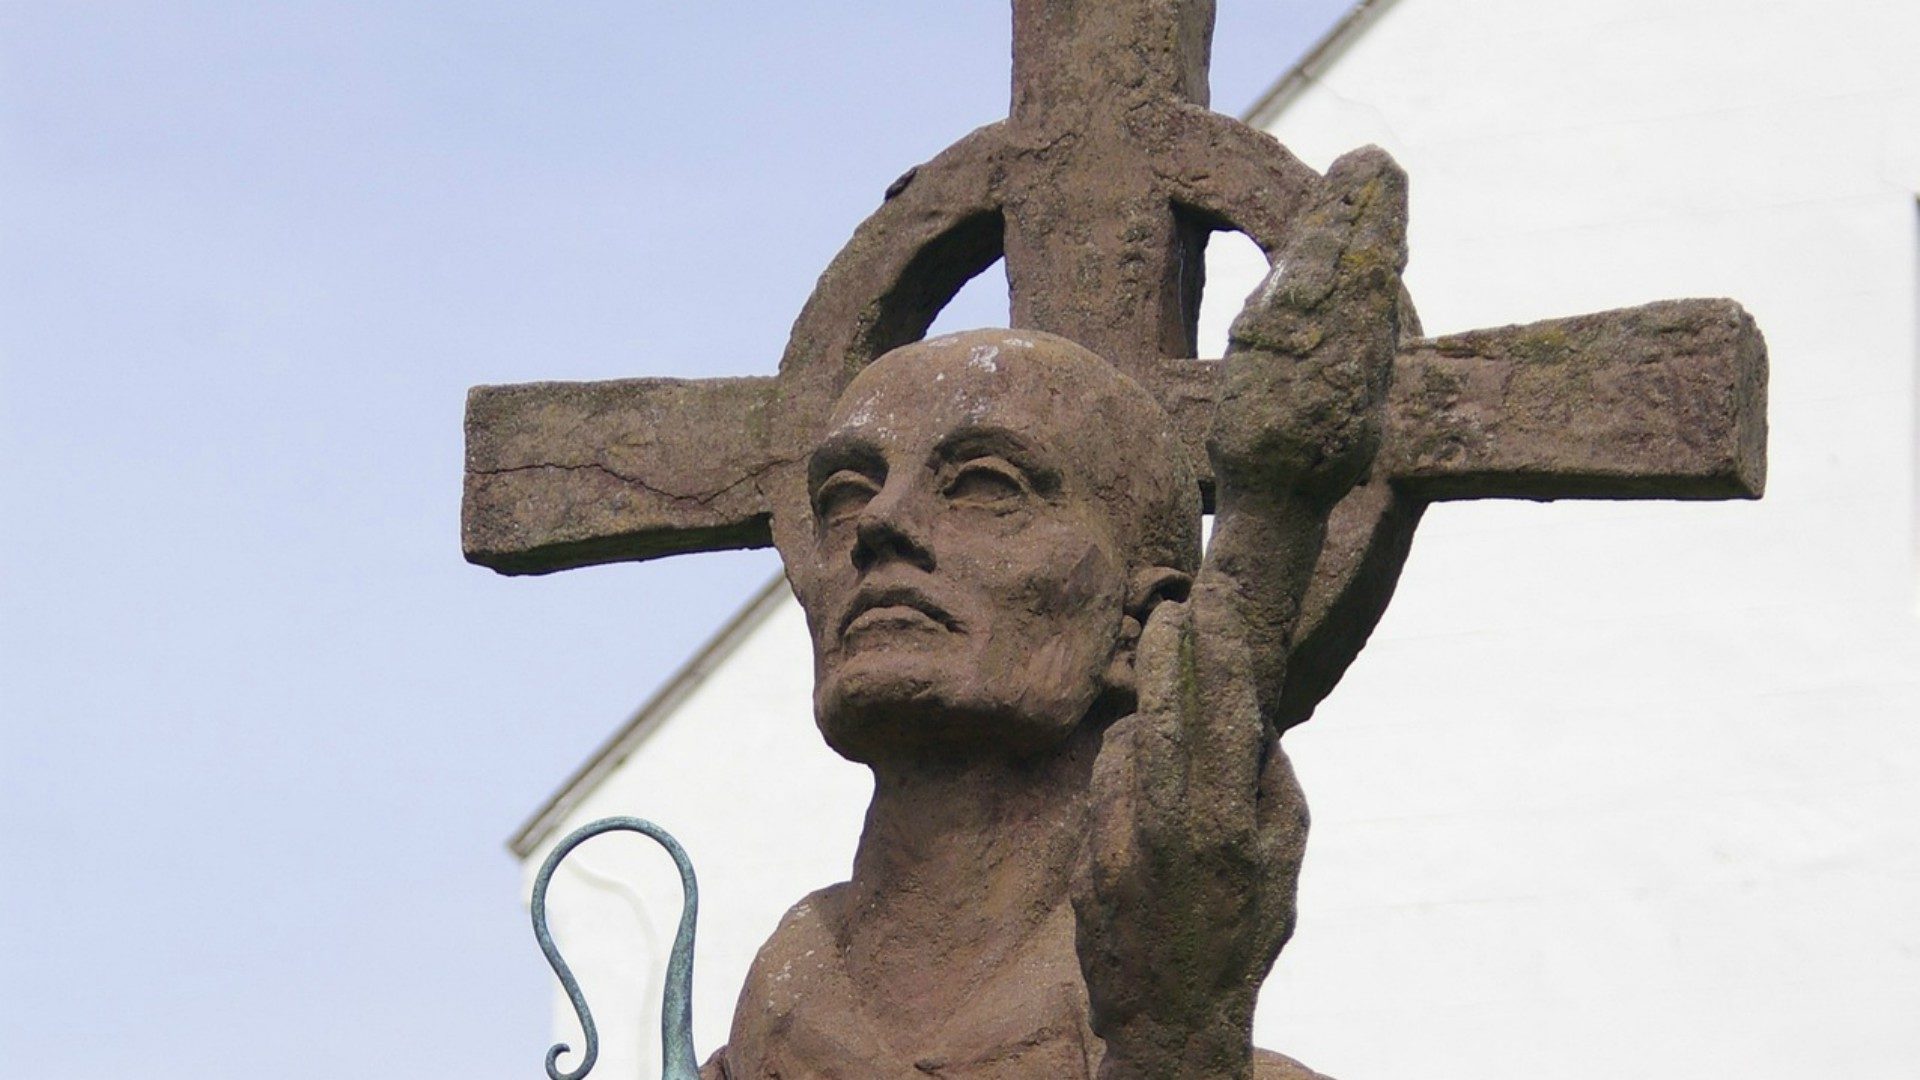 Pour le pape François, la mission demande de mettre le Christ au centre (Photo:Pixabay.com)